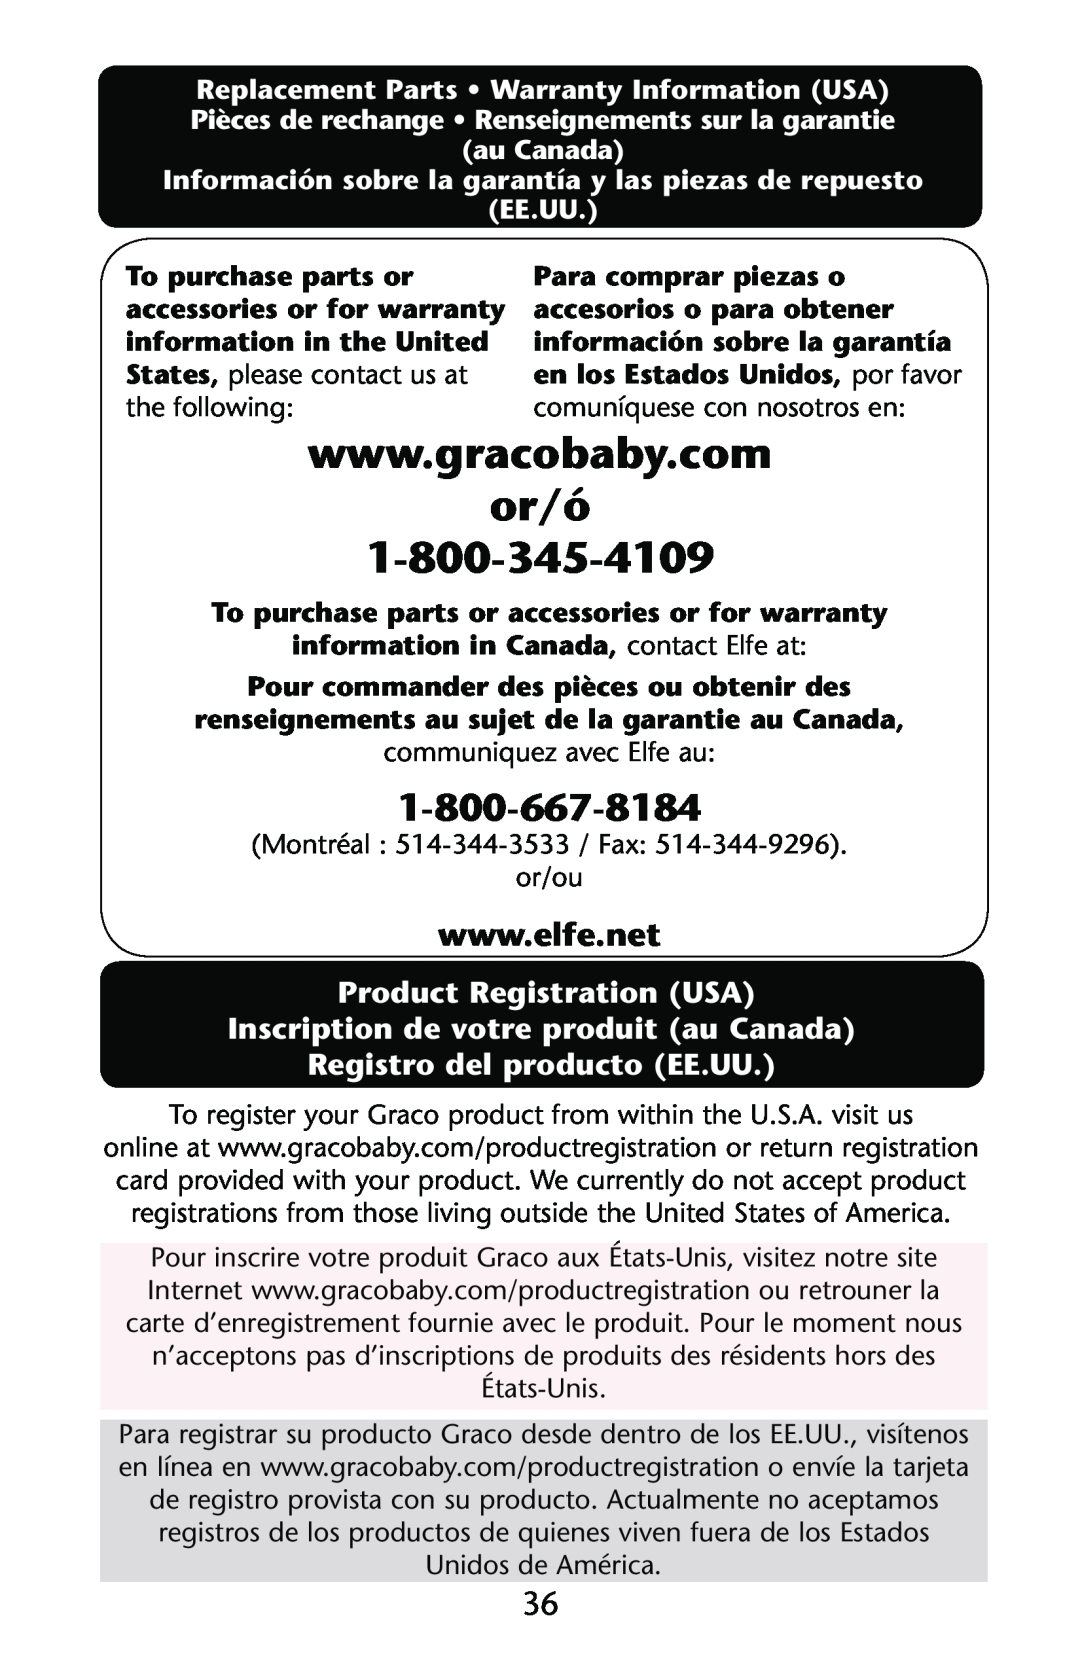 Graco PD123415B or/ó, Product Registration USA Inscription de votre produit au Canada, Registro del producto EE.UU 